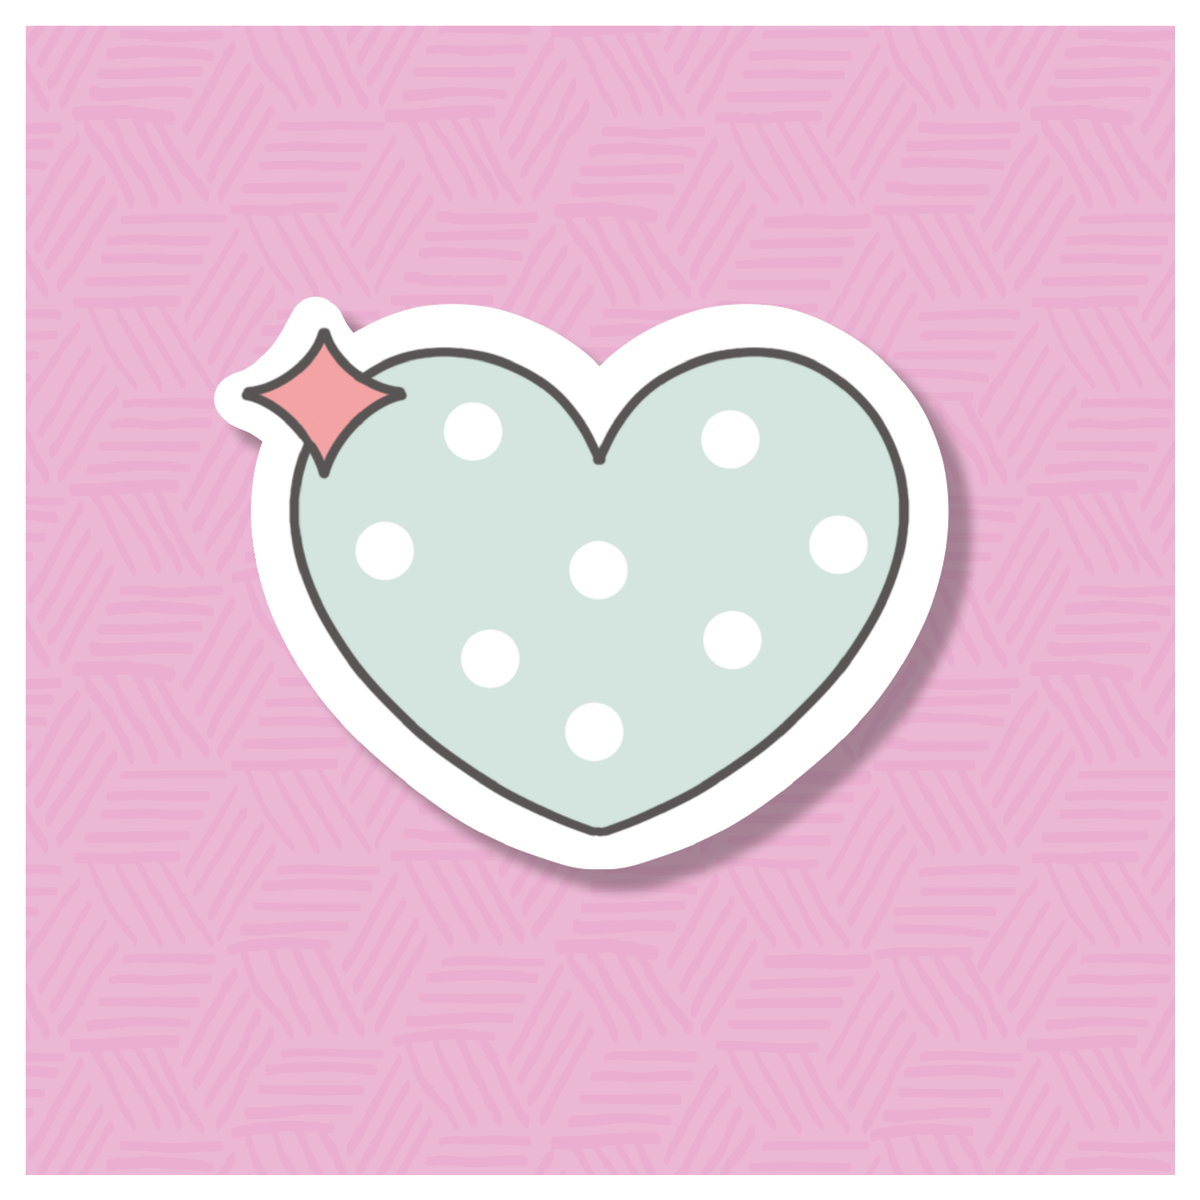 Shining Heart Digital Sticker File